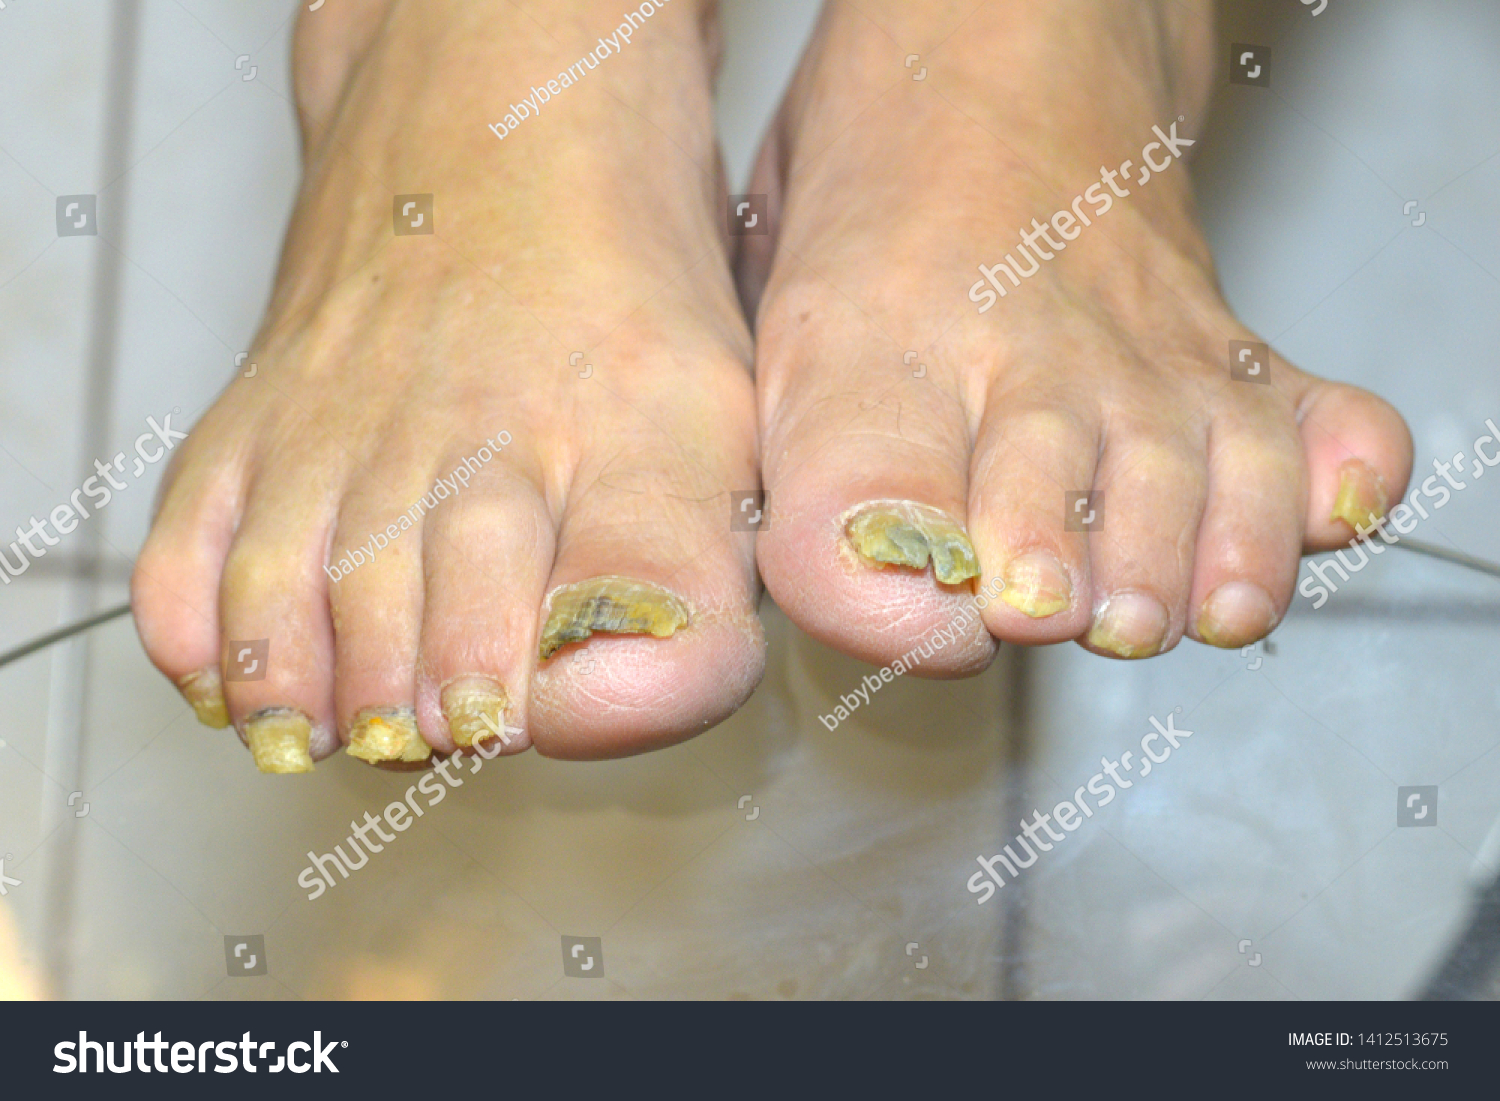 dry cracked heels fungus